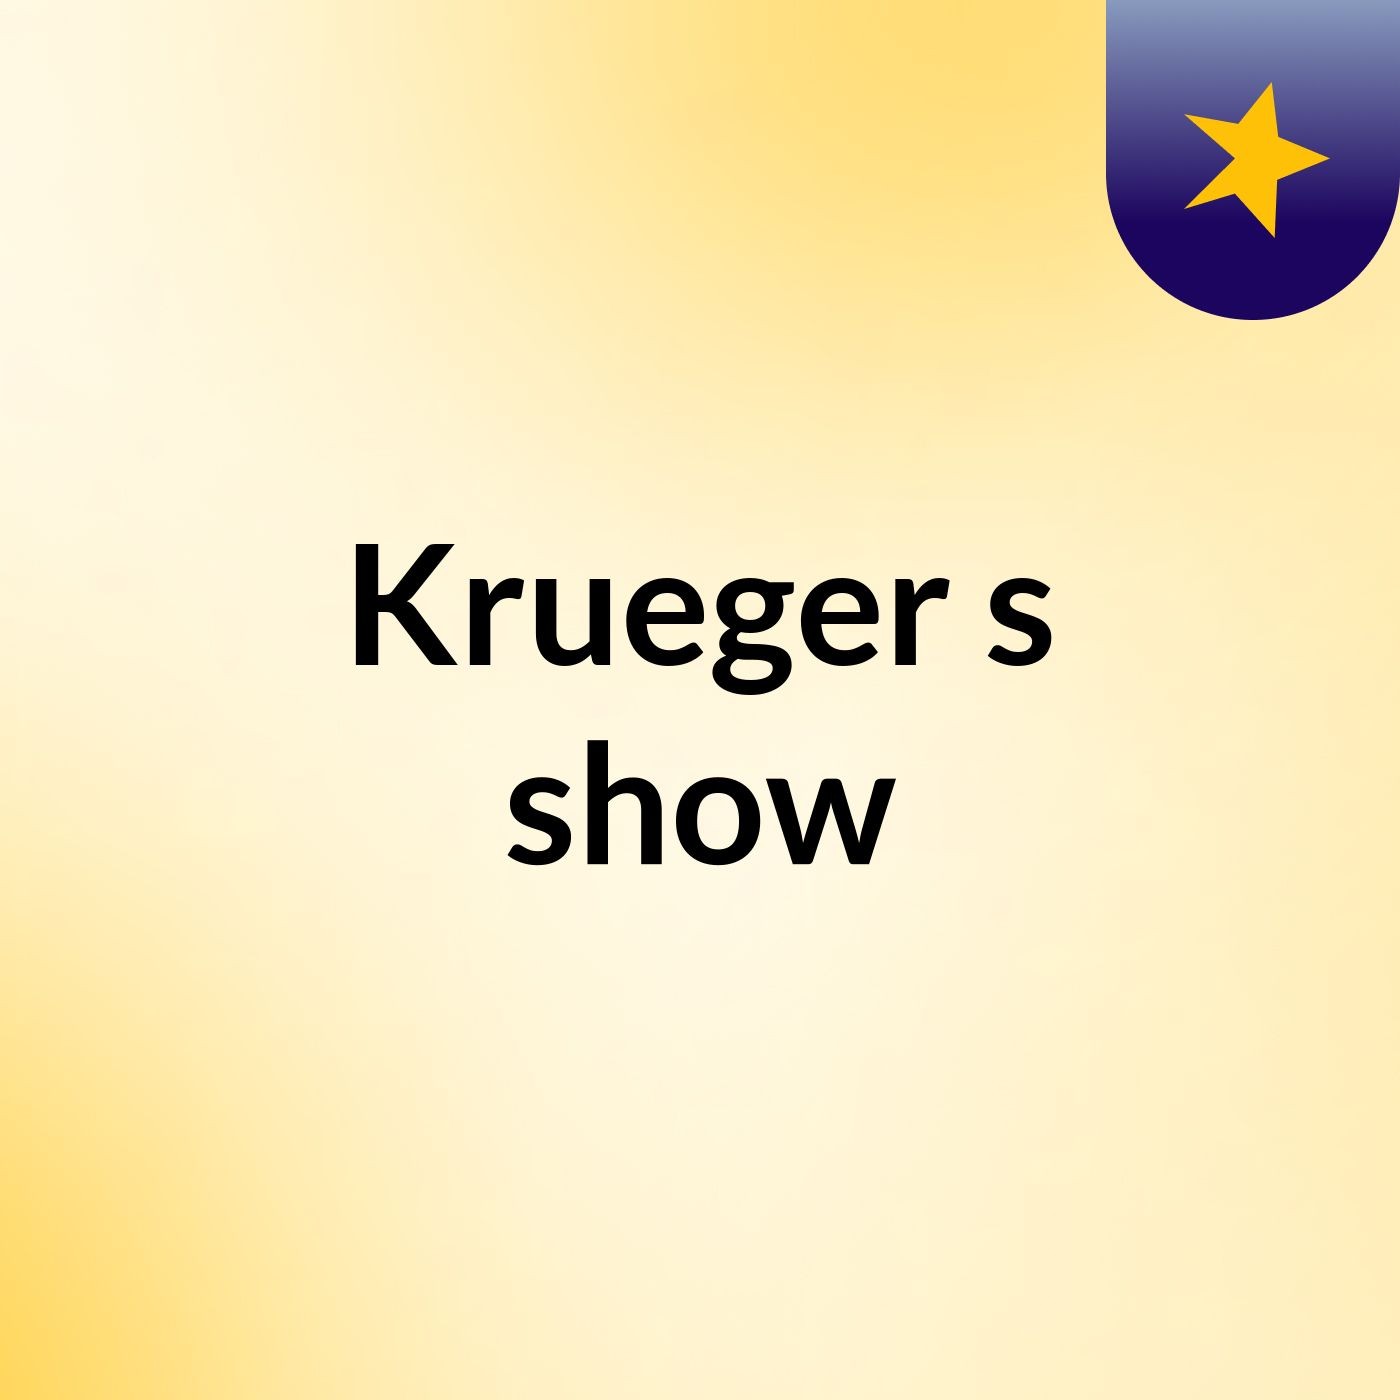 Krueger's show